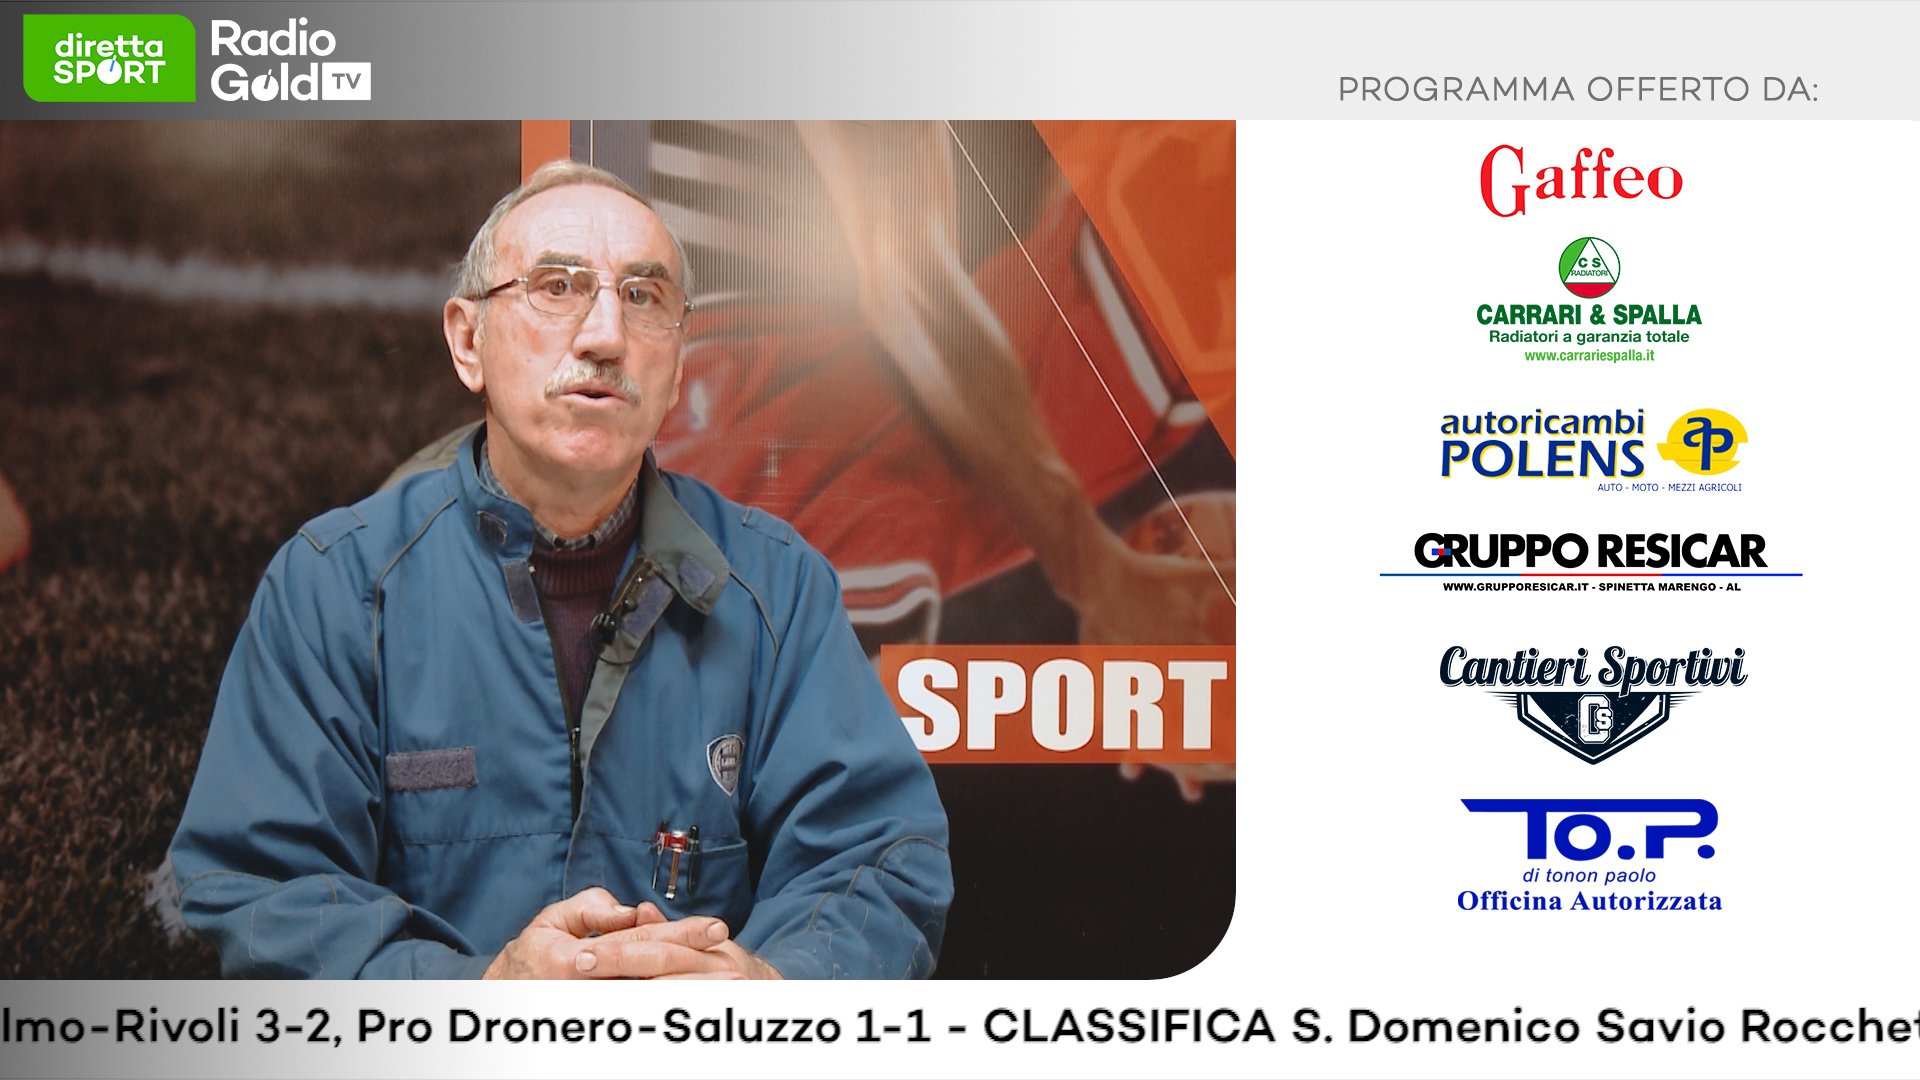 Serie D e Eccellenza: su Radio Gold Tv il presidente Paolo Tonon